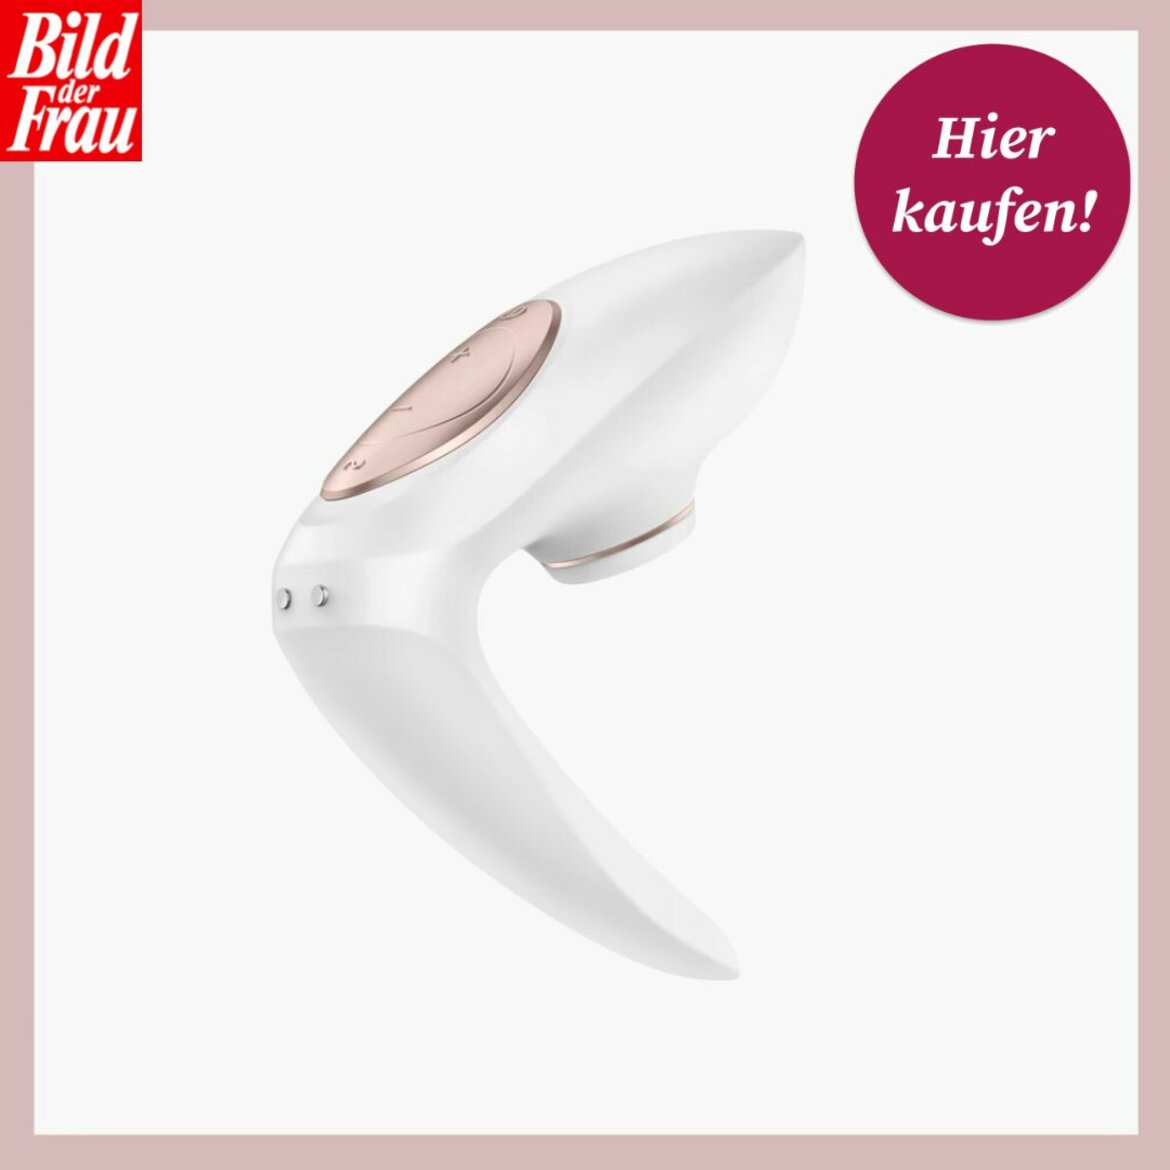 Ein eleganter weißer Vibrator mit roségoldenem Knopf, dargestellt vor einem grauen Hintergrund mit "Hier kaufen!"-Button. | © Amorelie